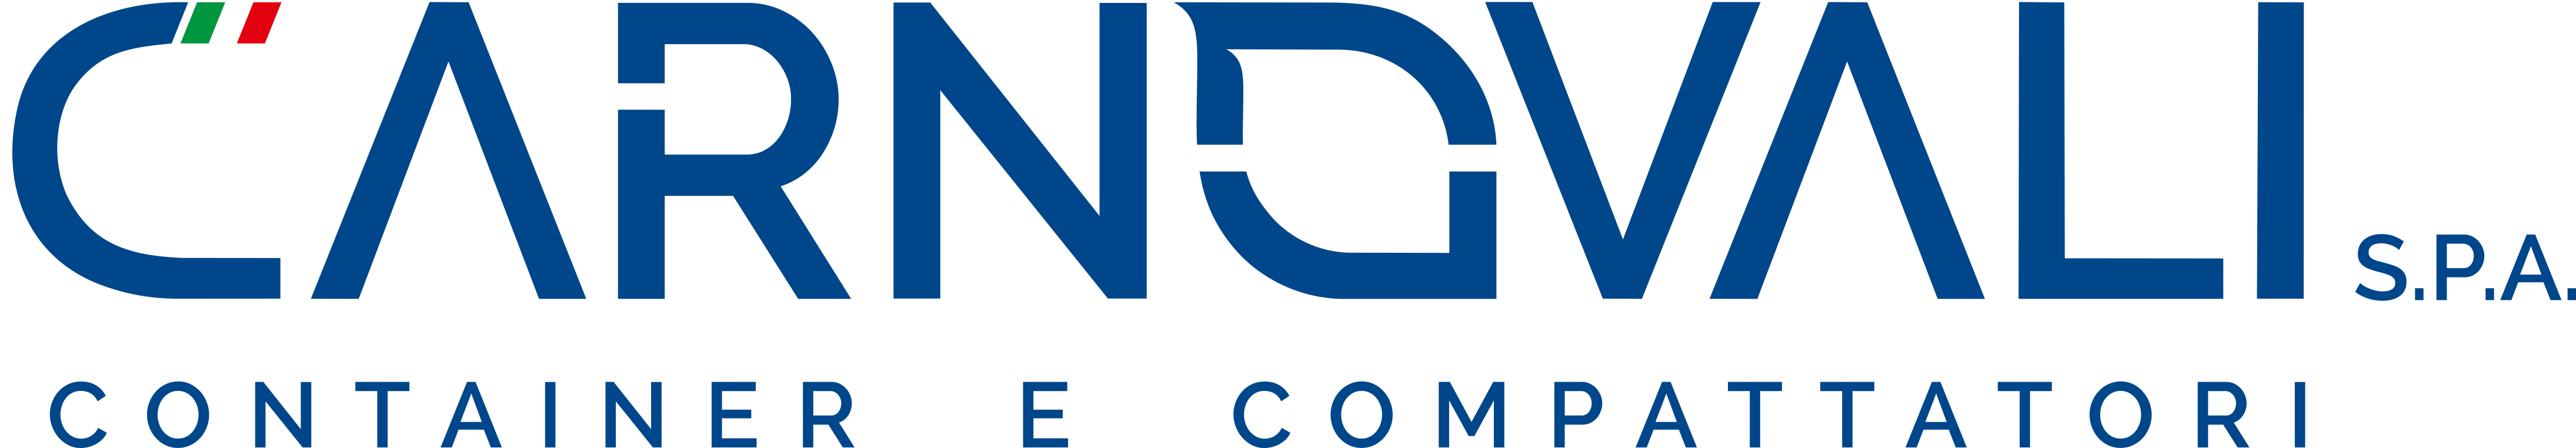 logo-carnovali-2021